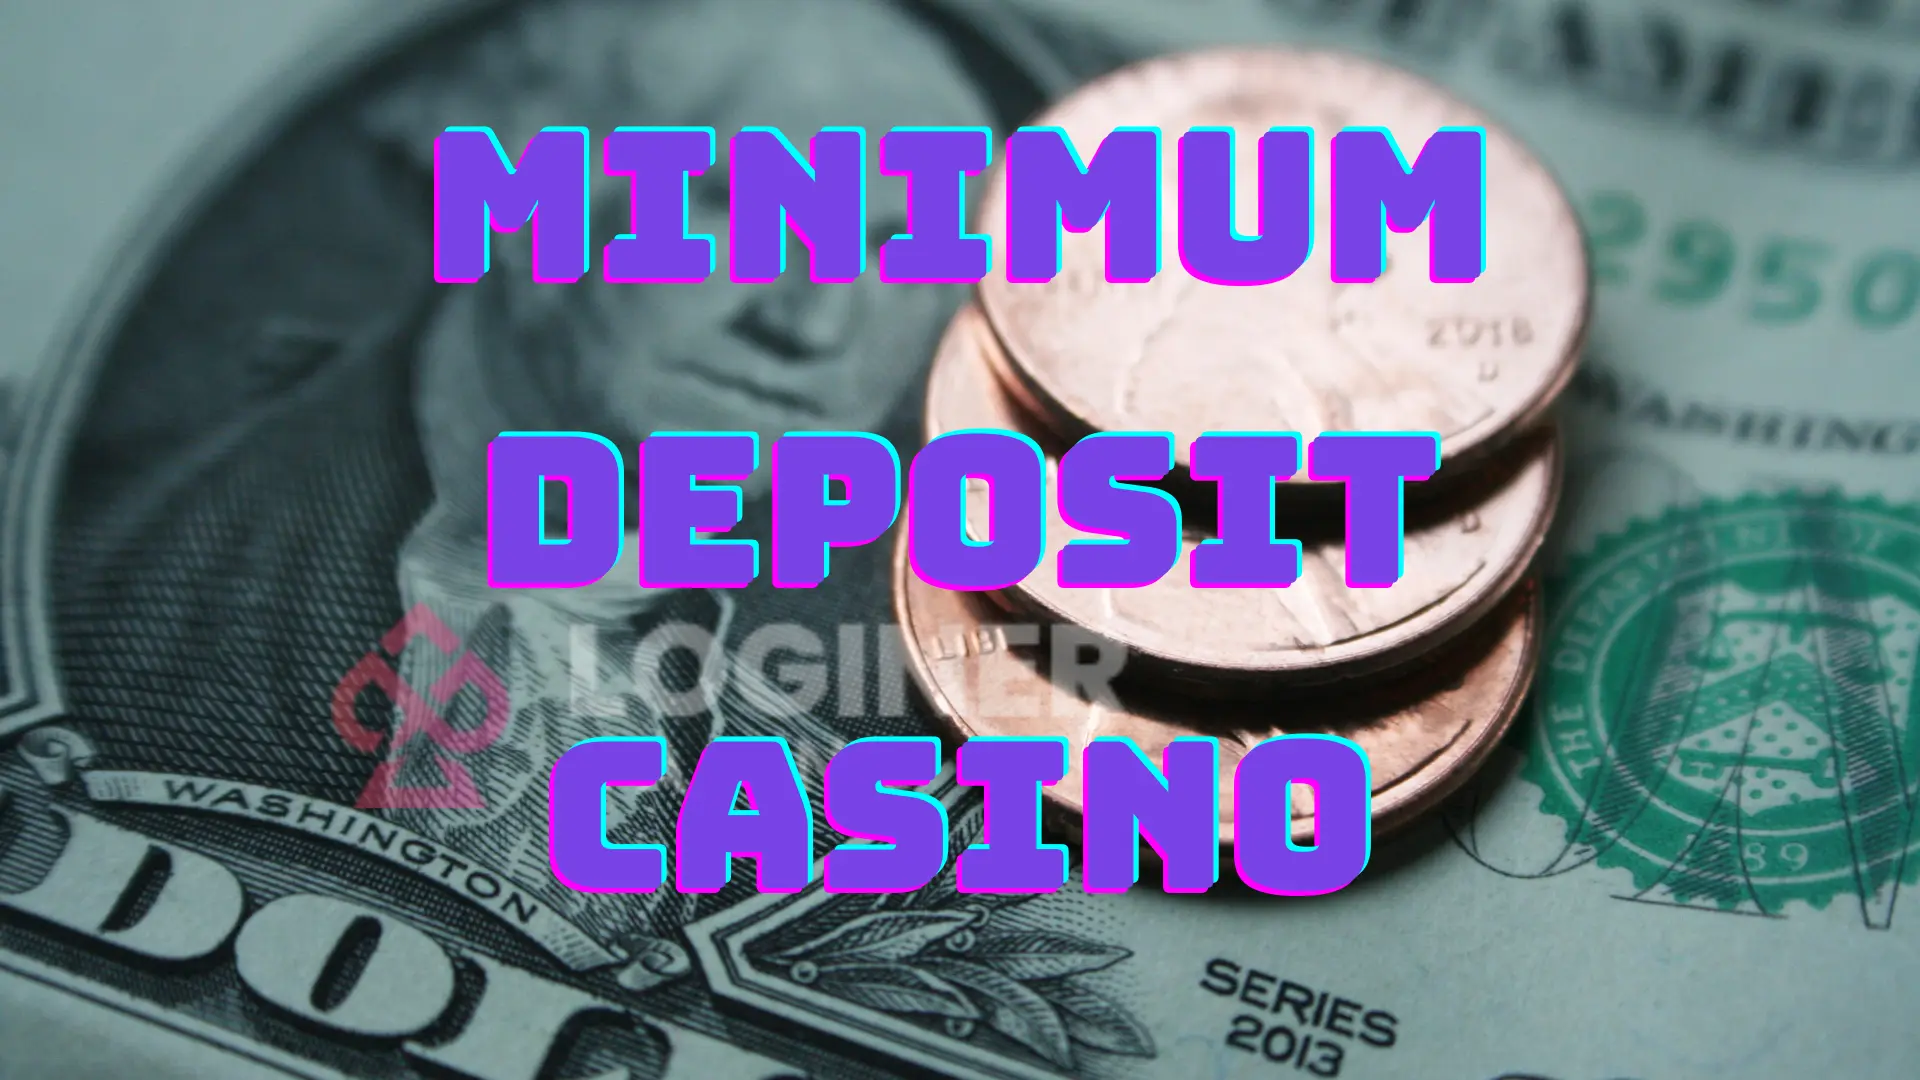 minimum deposit online casino